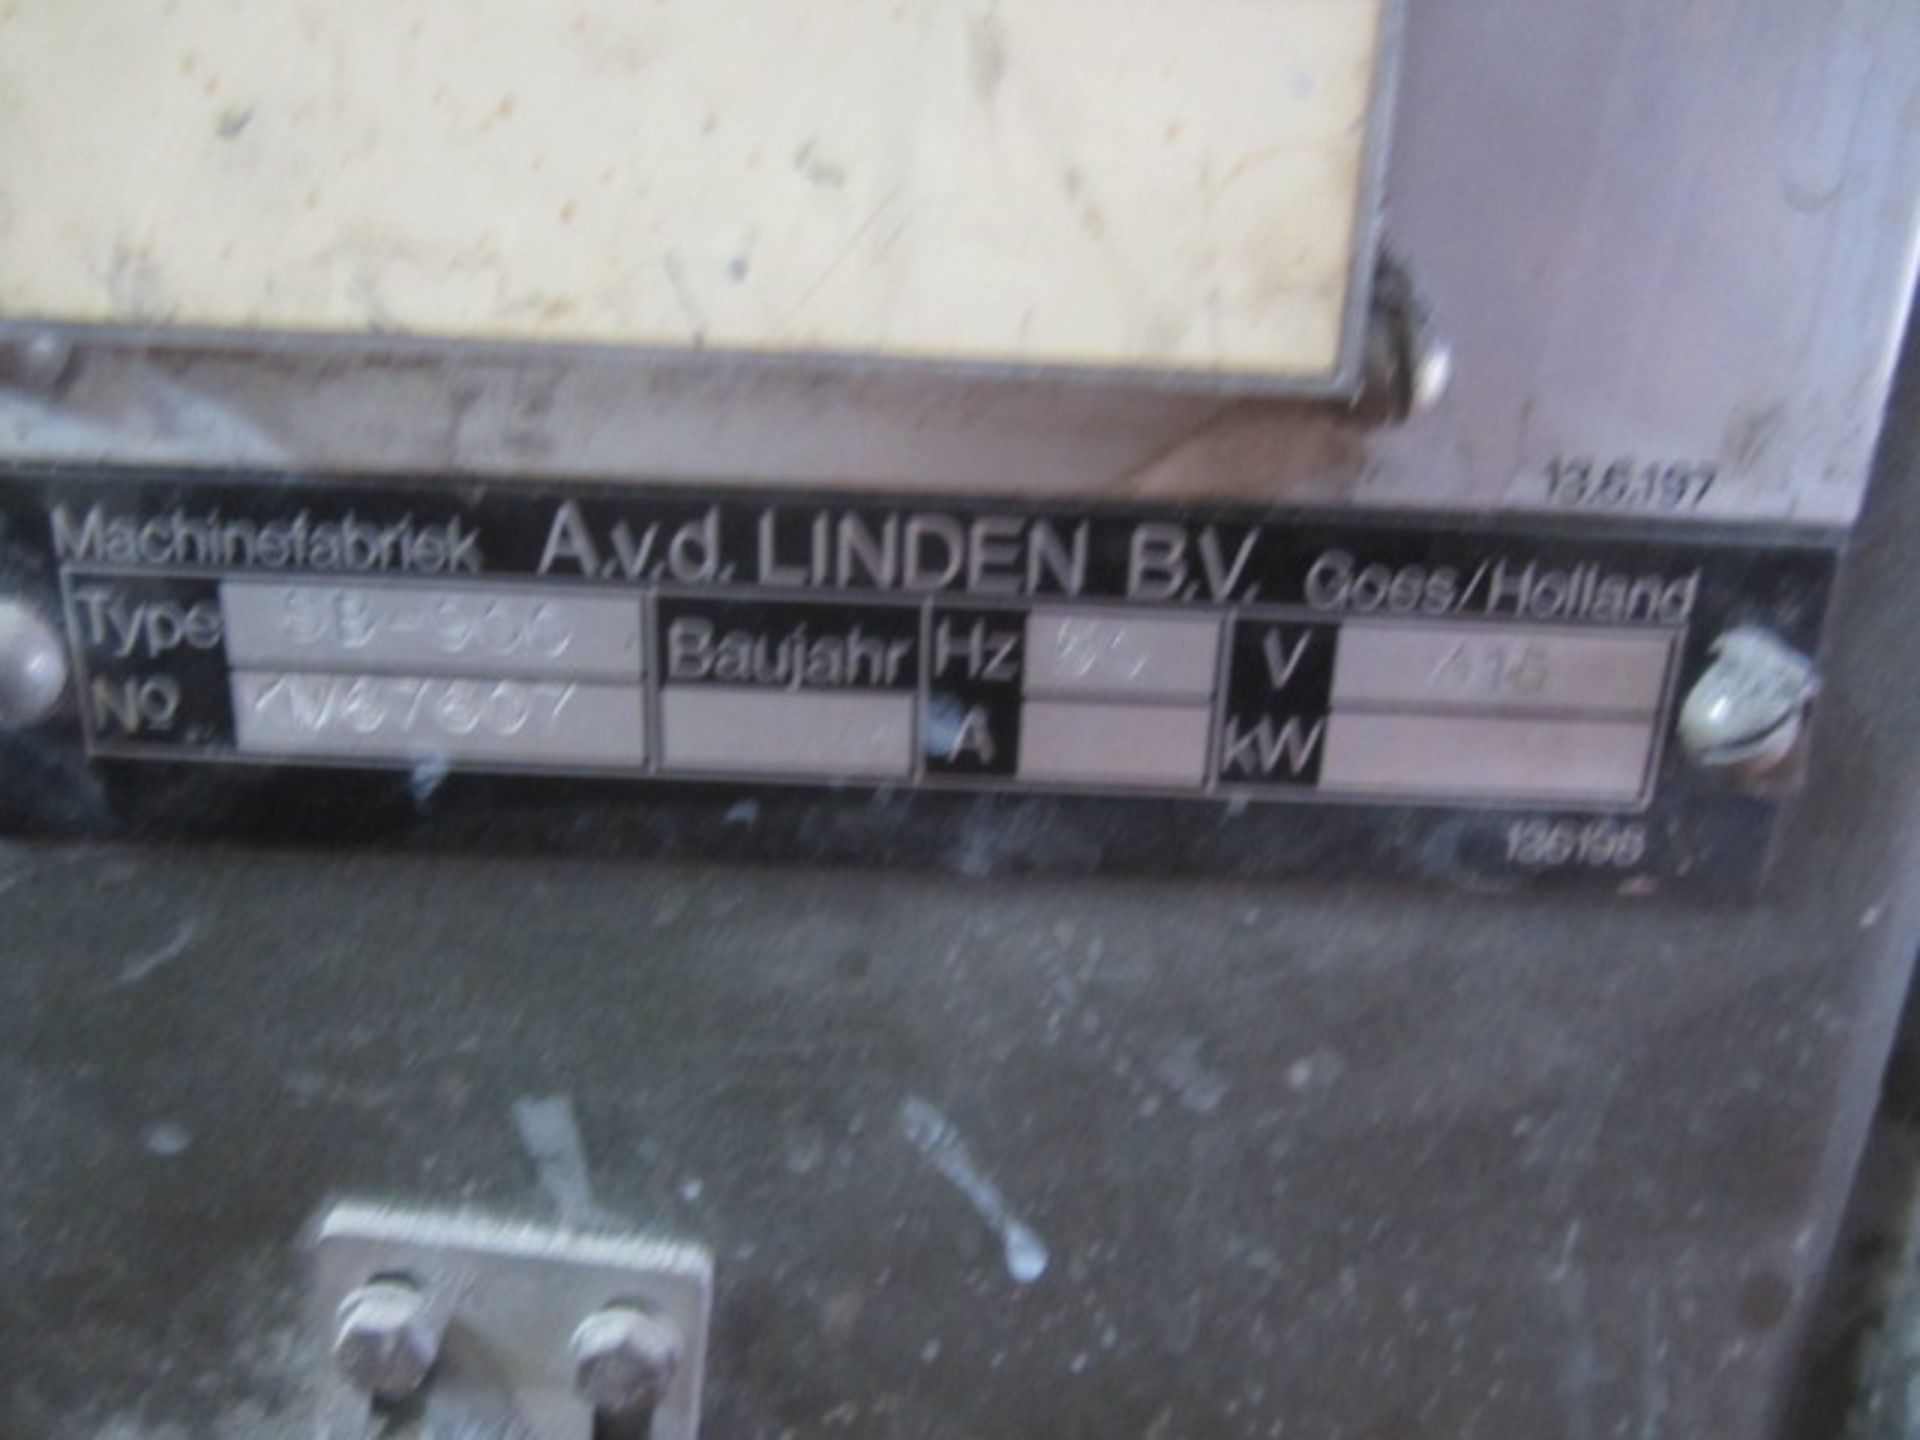 AVD Linden Sandingmaster SB900 wide belt drum sander, serial no. KM67607, belt width 900mm. A work - Image 4 of 9